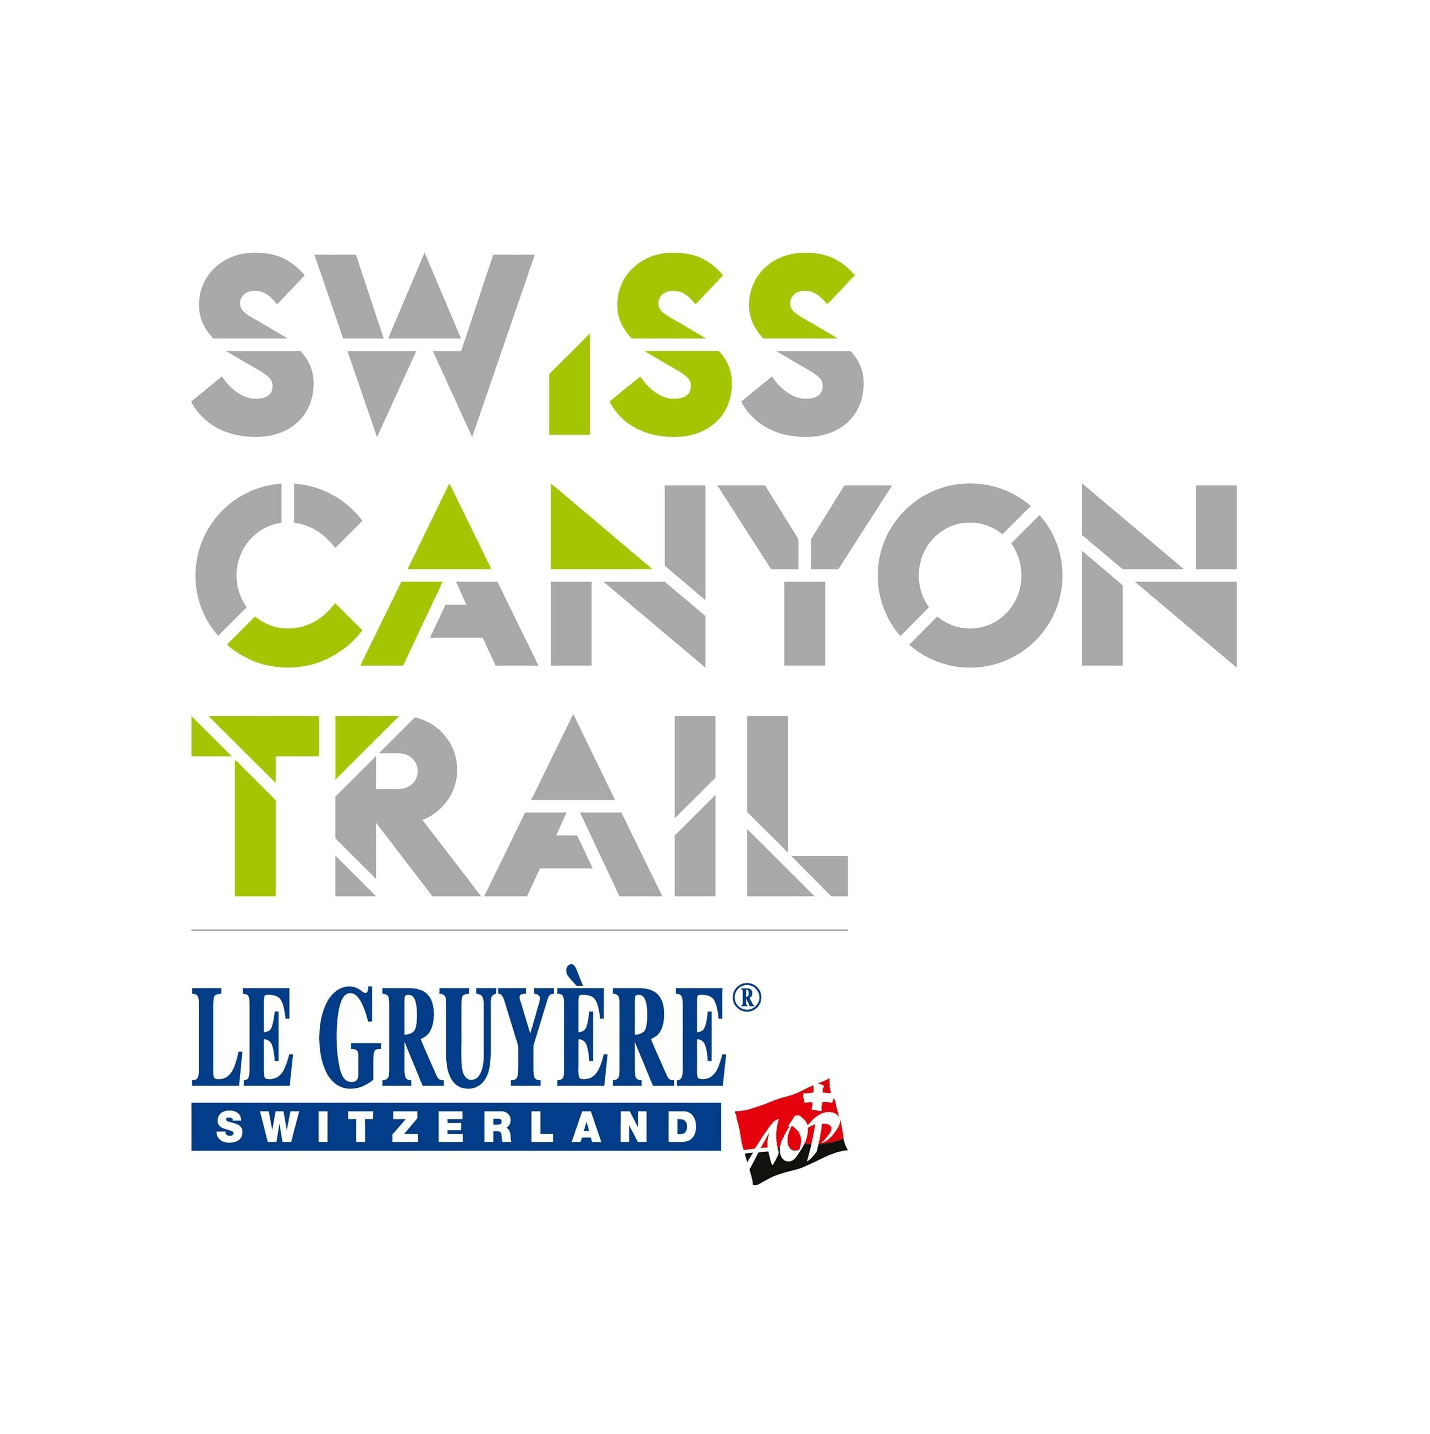 Logo Swiss Canyon Trail